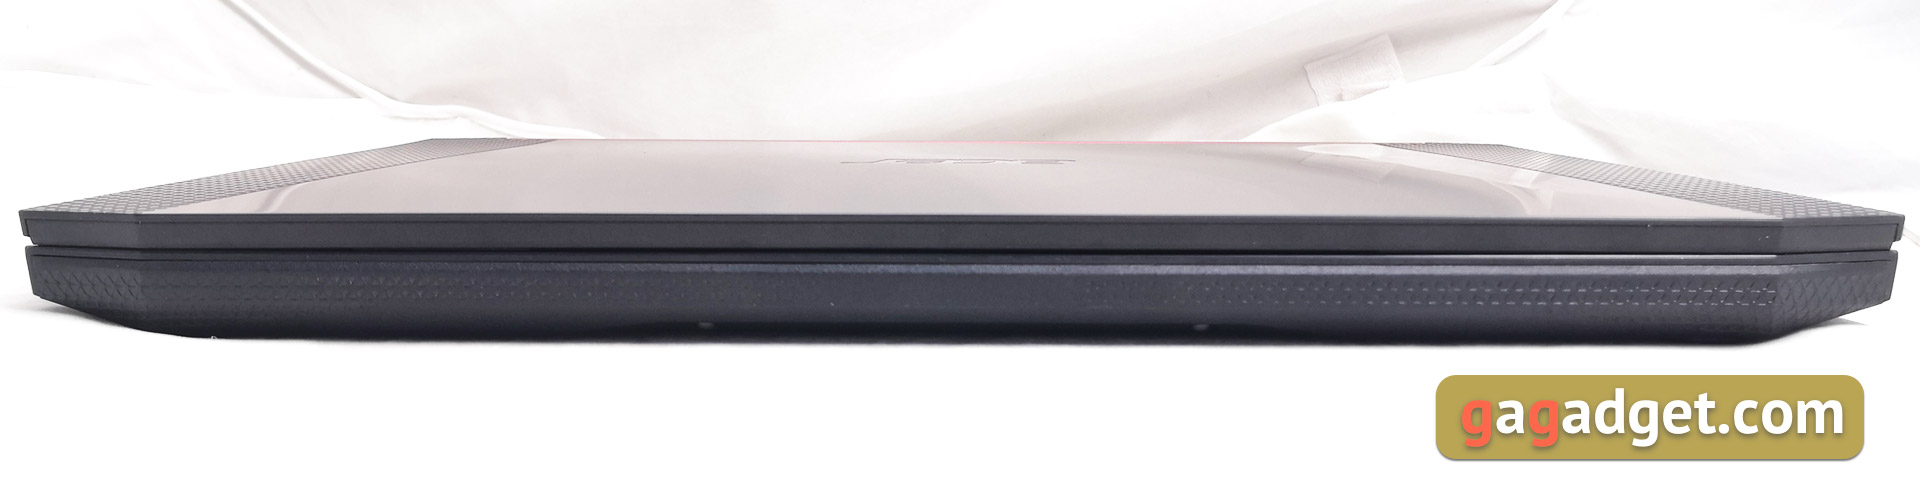 Обзор геймерского ноутбука Acer Nitro 5 AN515-54: недорогой и мощный-8